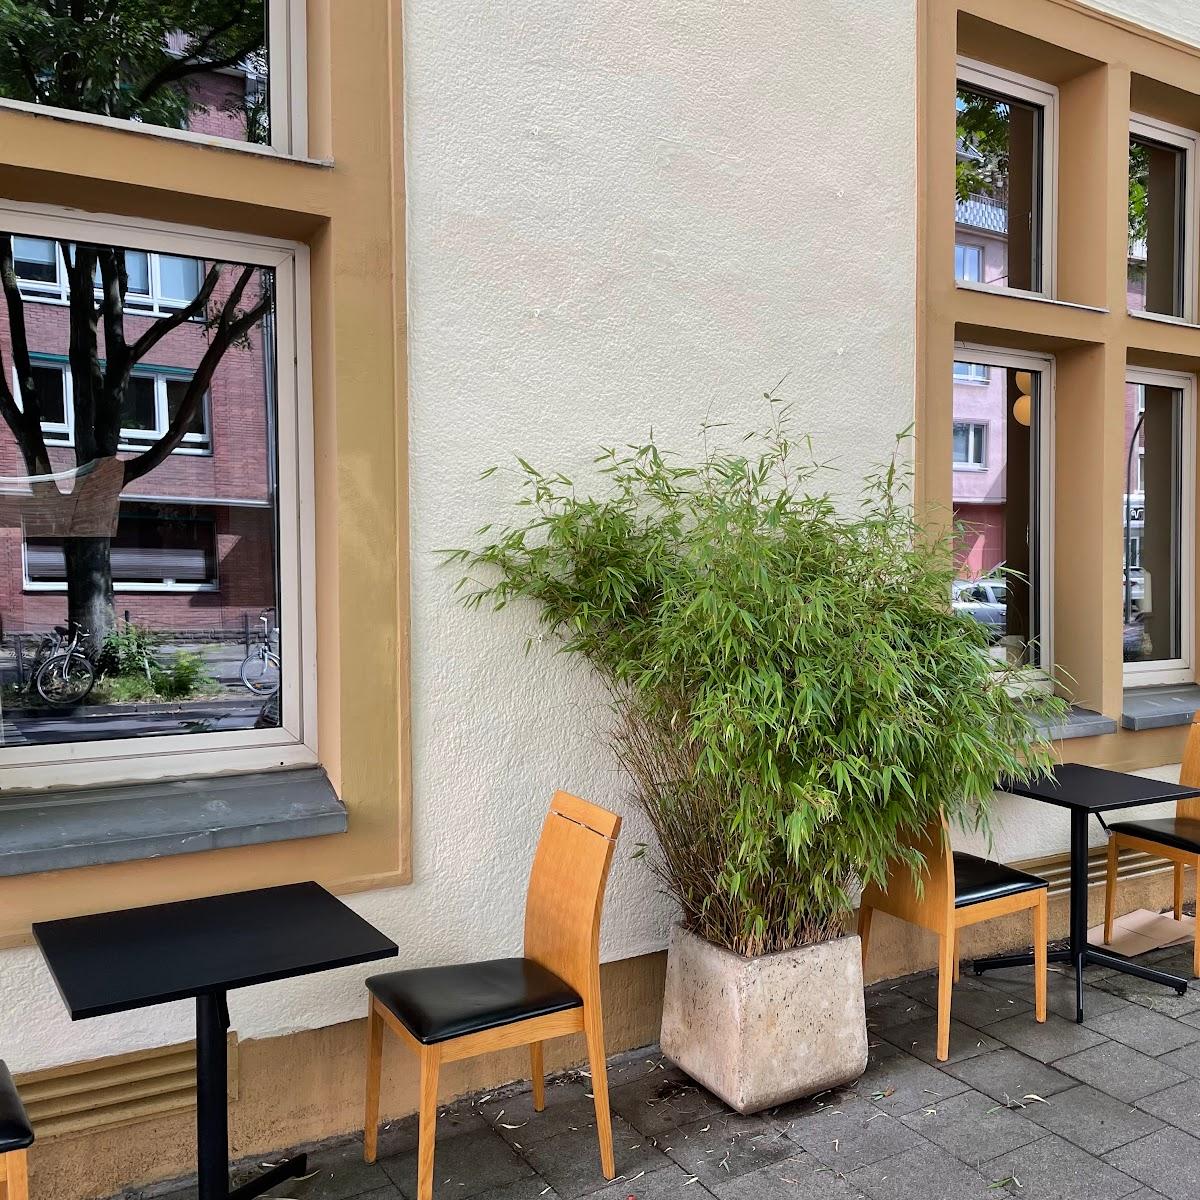 Restaurant "Sushibar Sushitaxi ManThei" in Düsseldorf